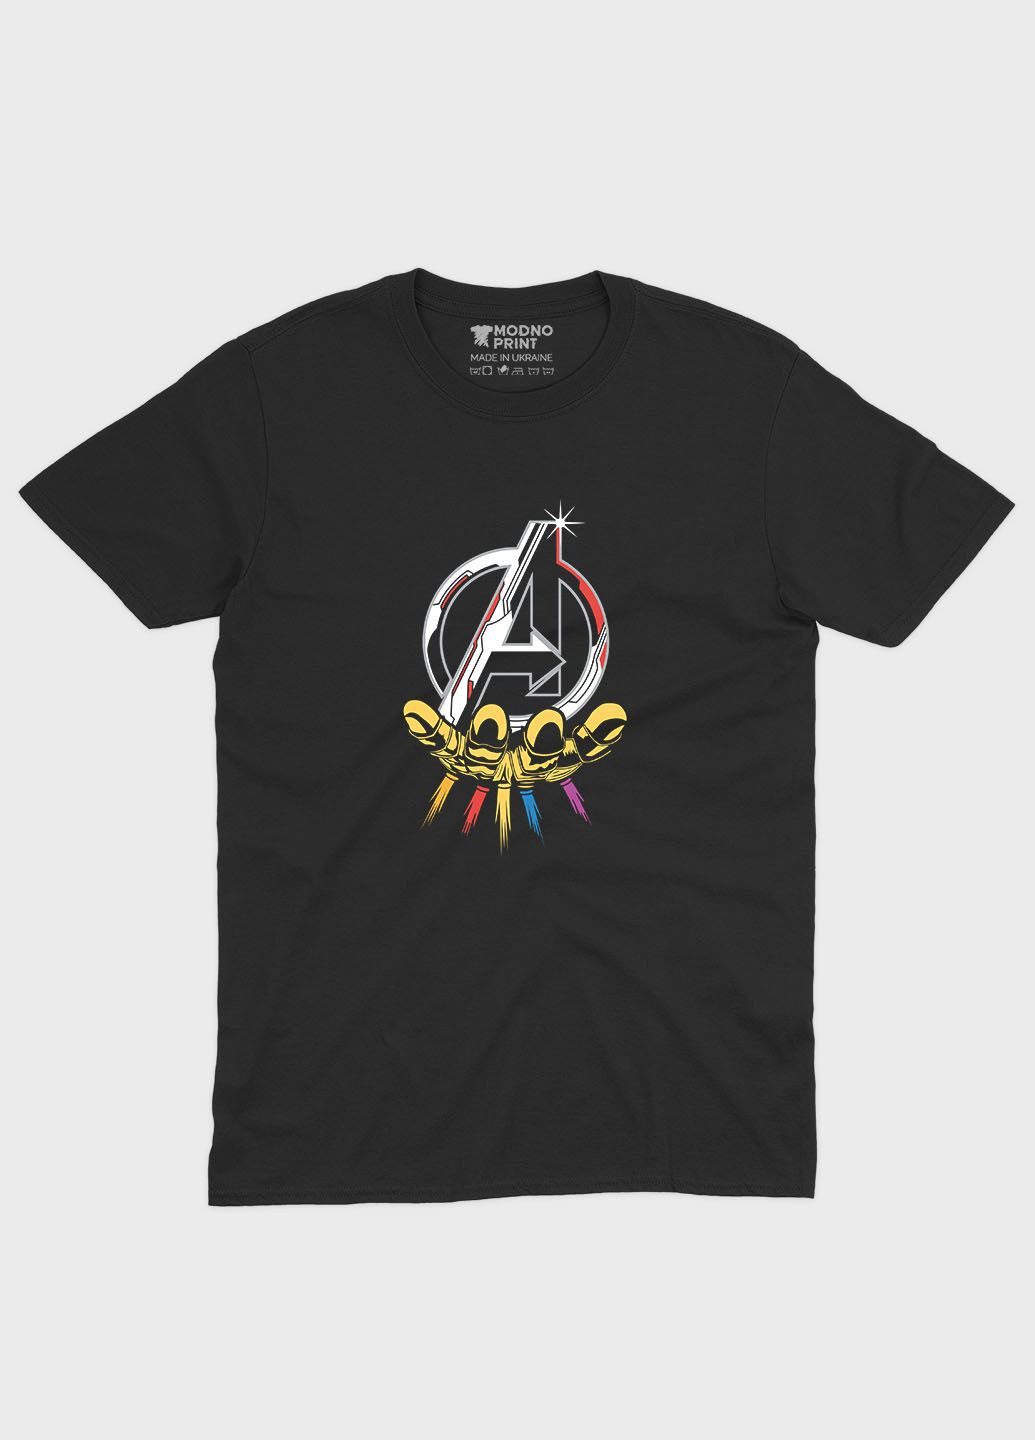 Черная демисезонная футболка для мальчика с принтом супергероями - мстители (ts001-1-bl-006-025-010-b) Modno